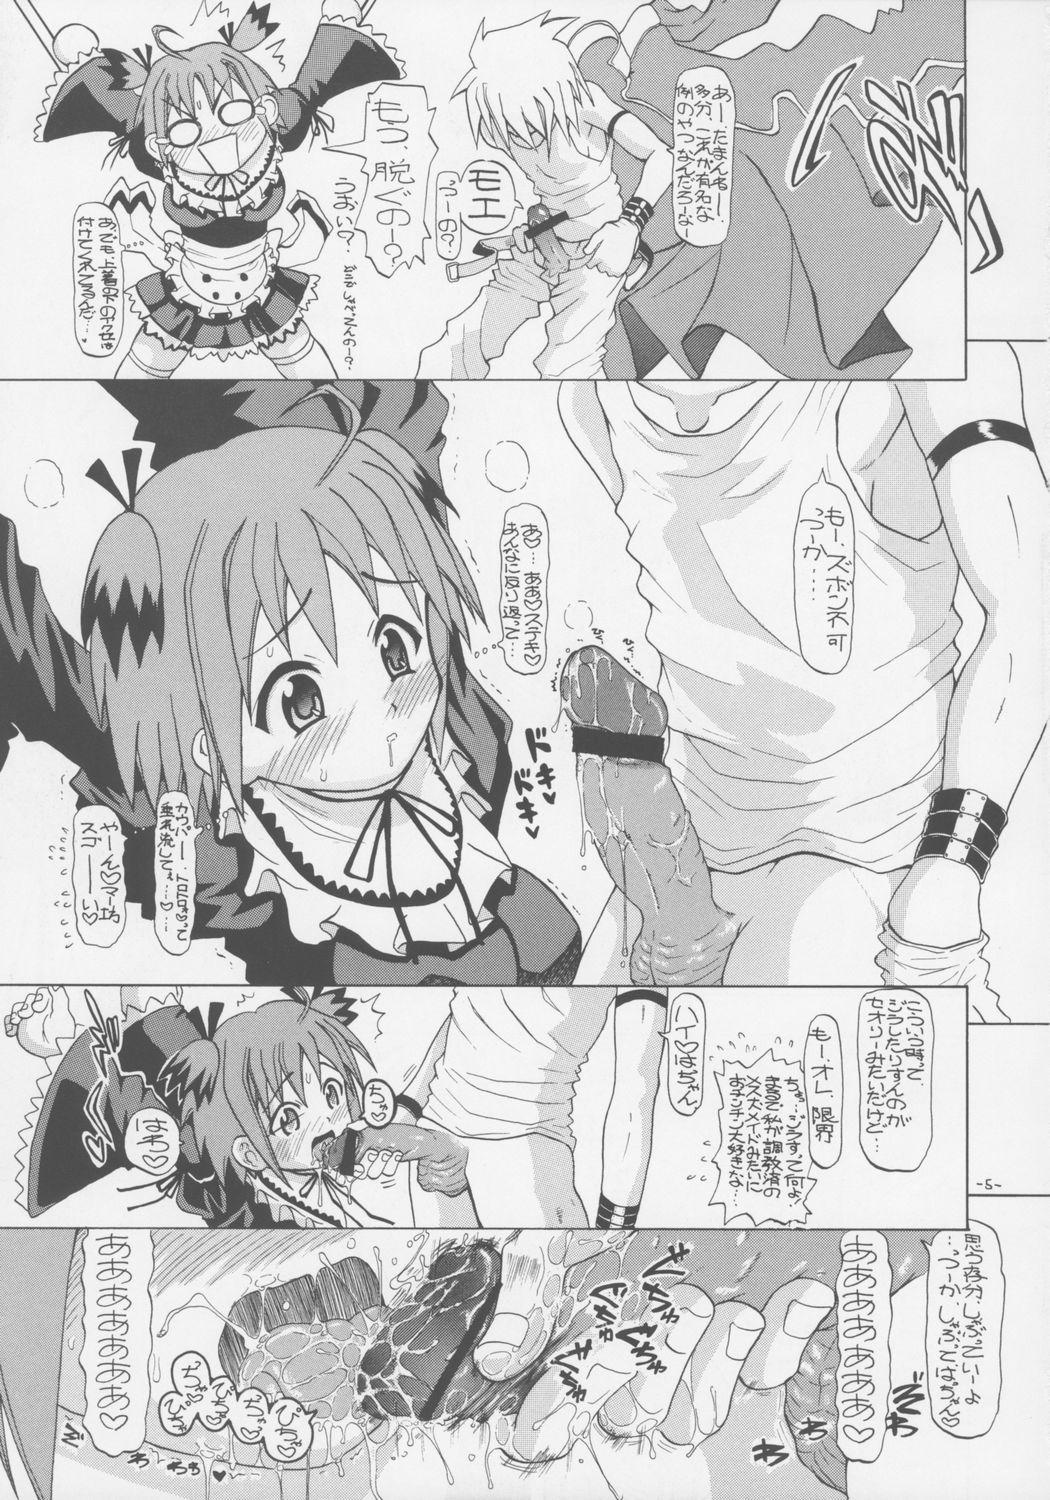 Bokep Chugeza - Mahou sensei negima Sex Party - Page 4